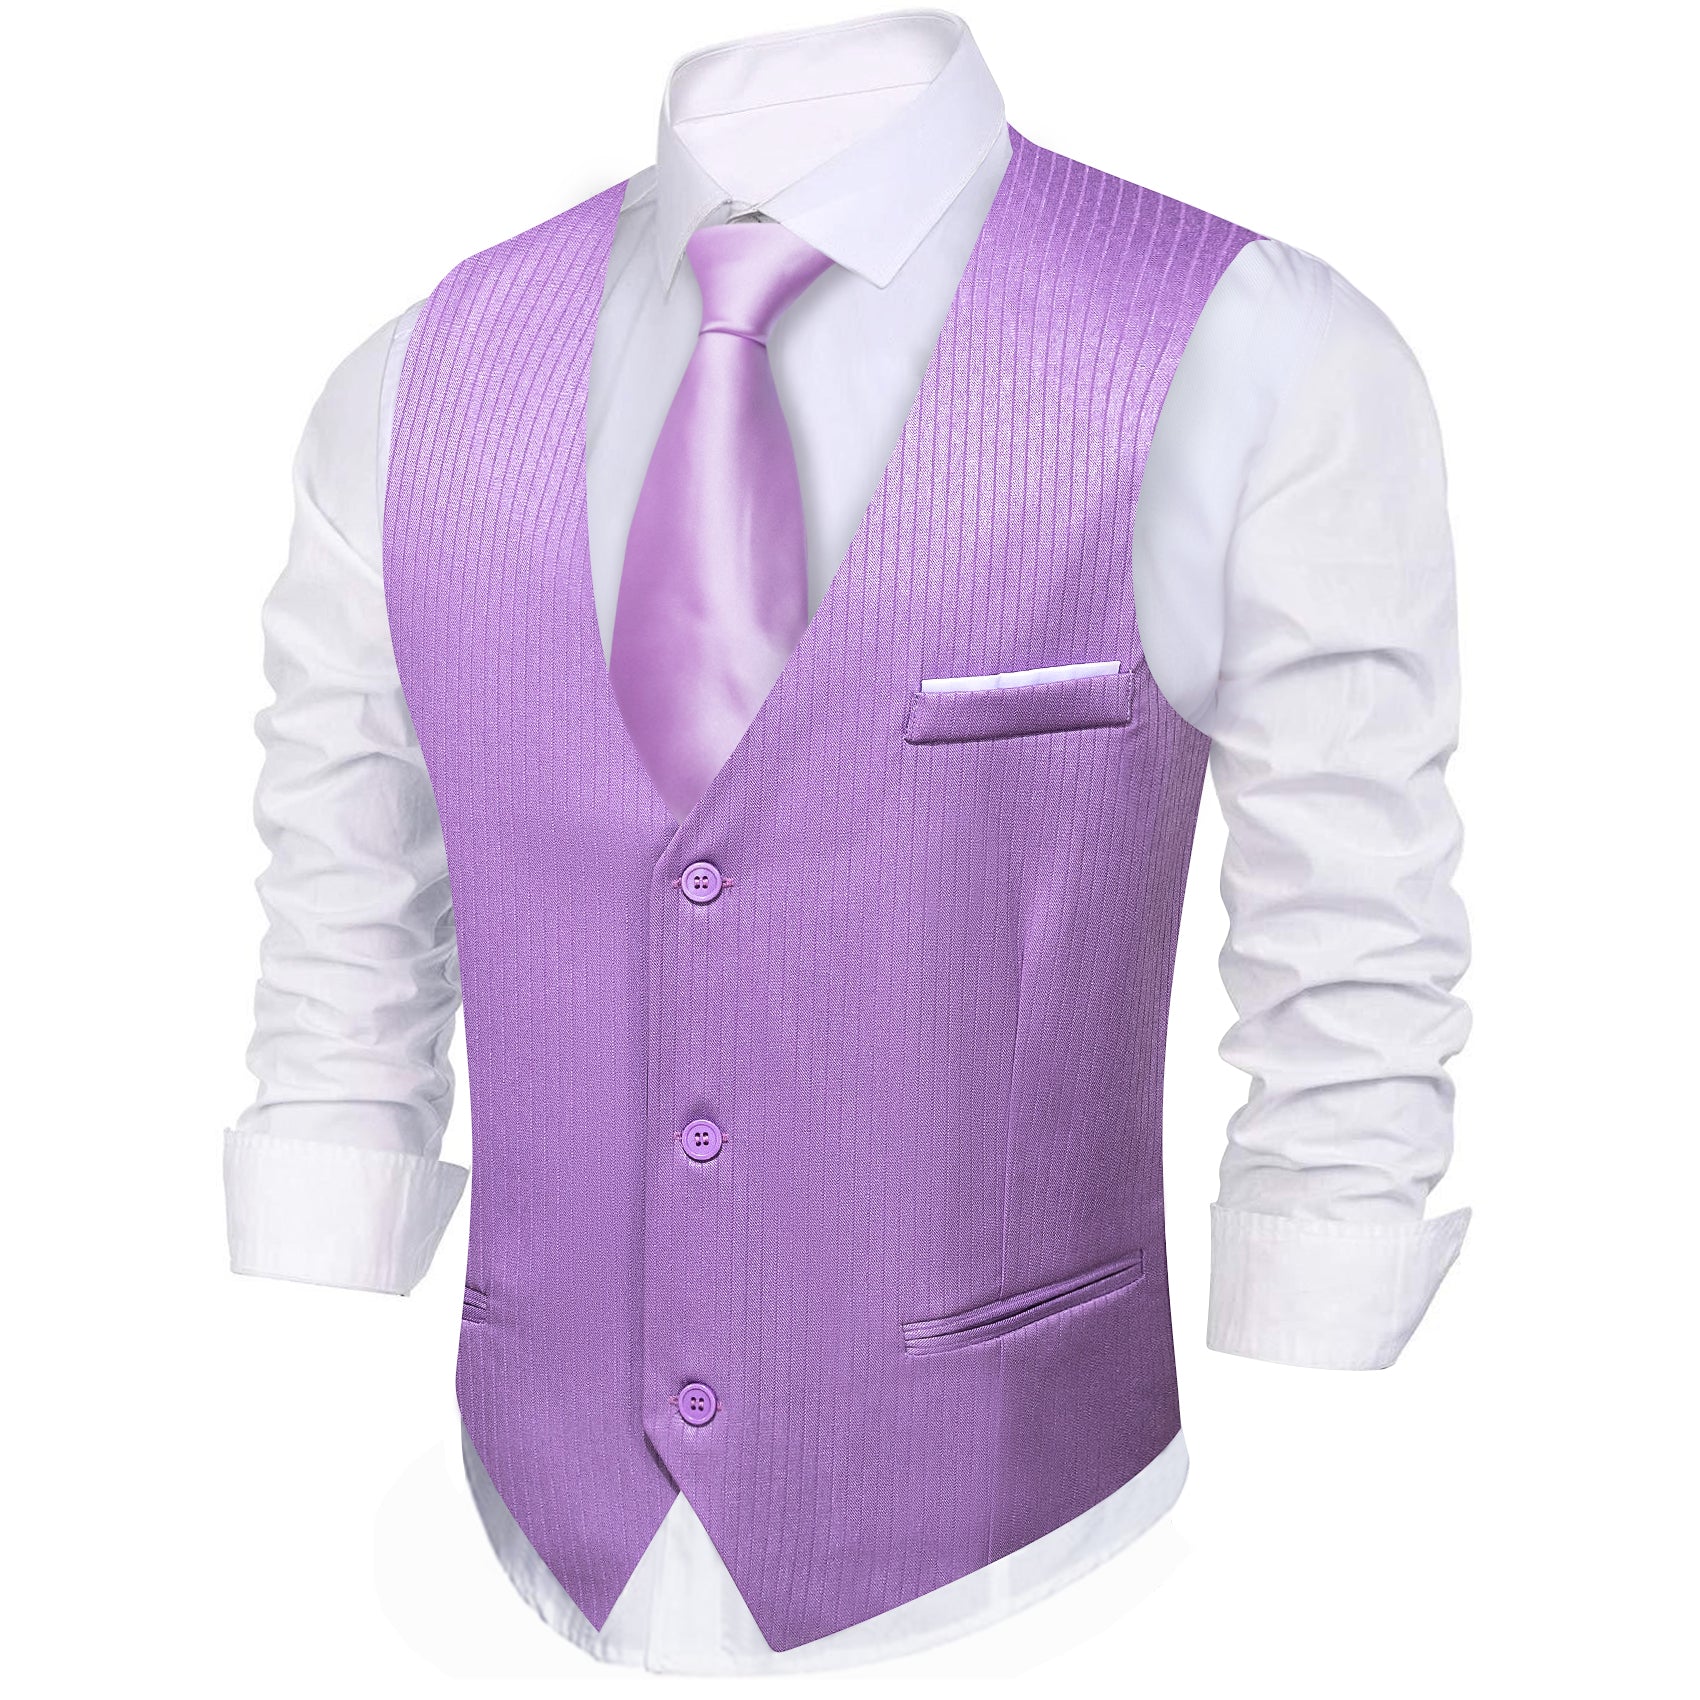 Barry.wang Pale Lilace Solid Business Vest Suit